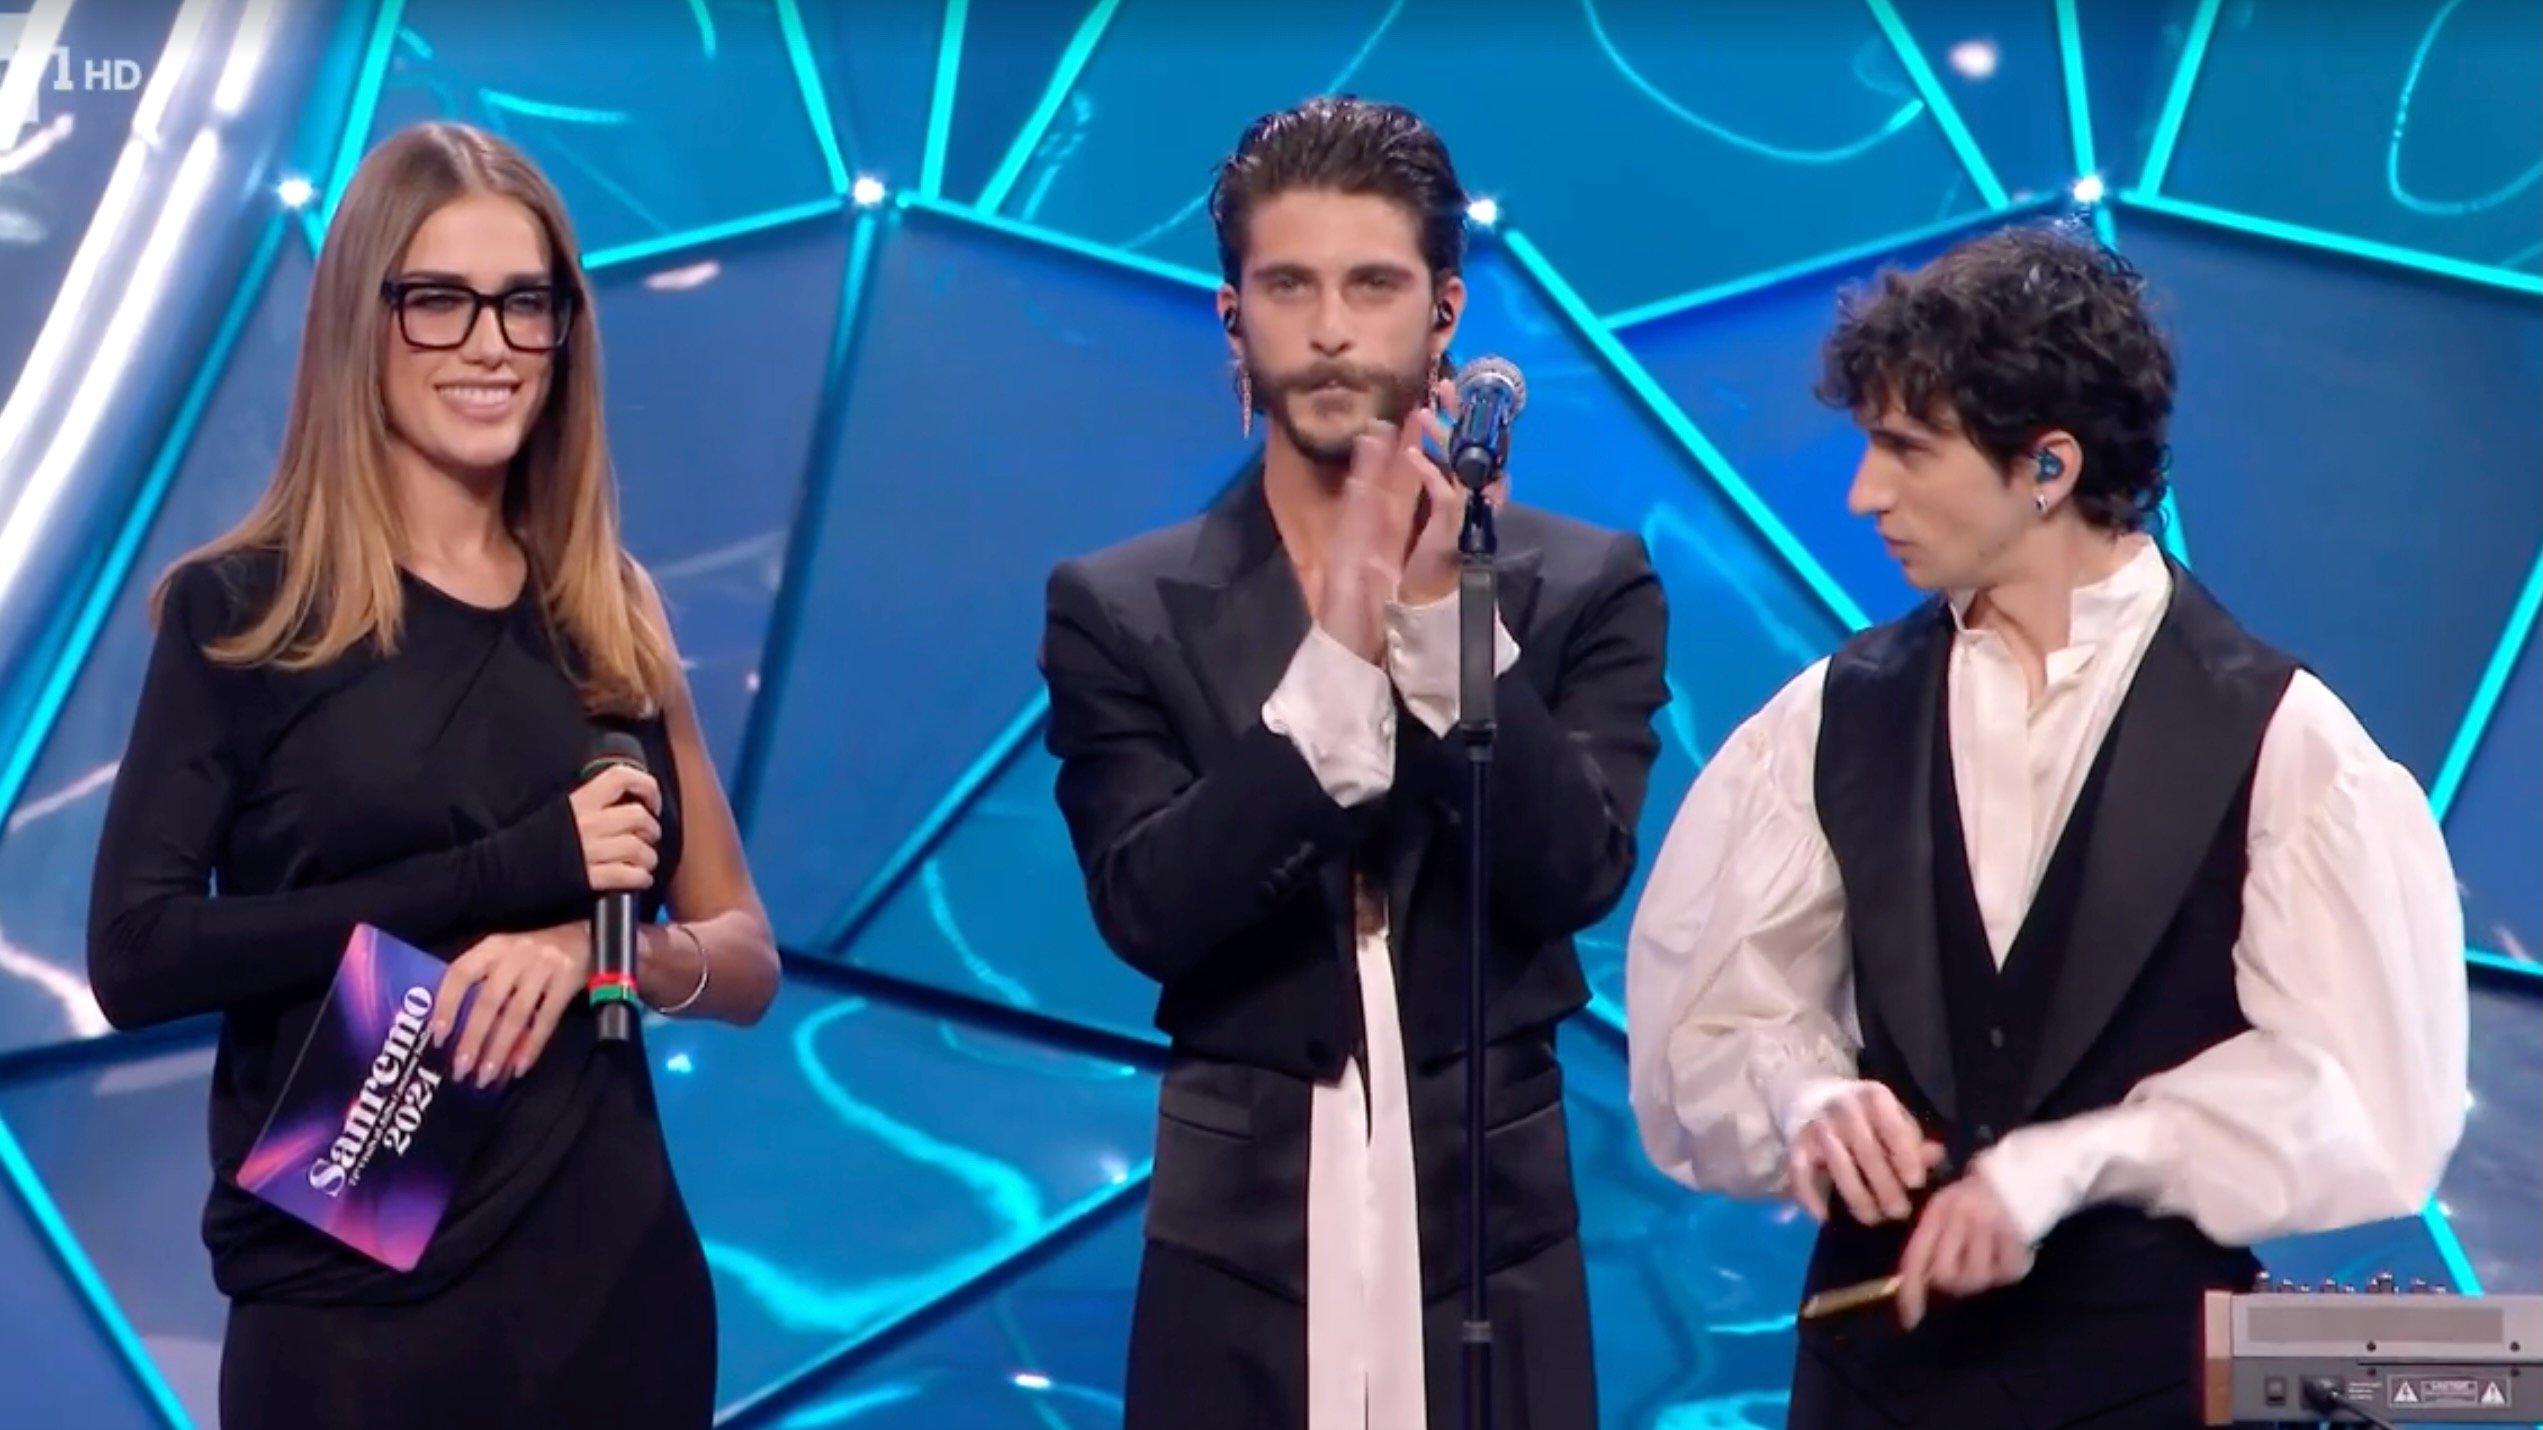 "Si però tu hai vinto": Clara scherza con i Santi Francesi sul palco di Sanremo